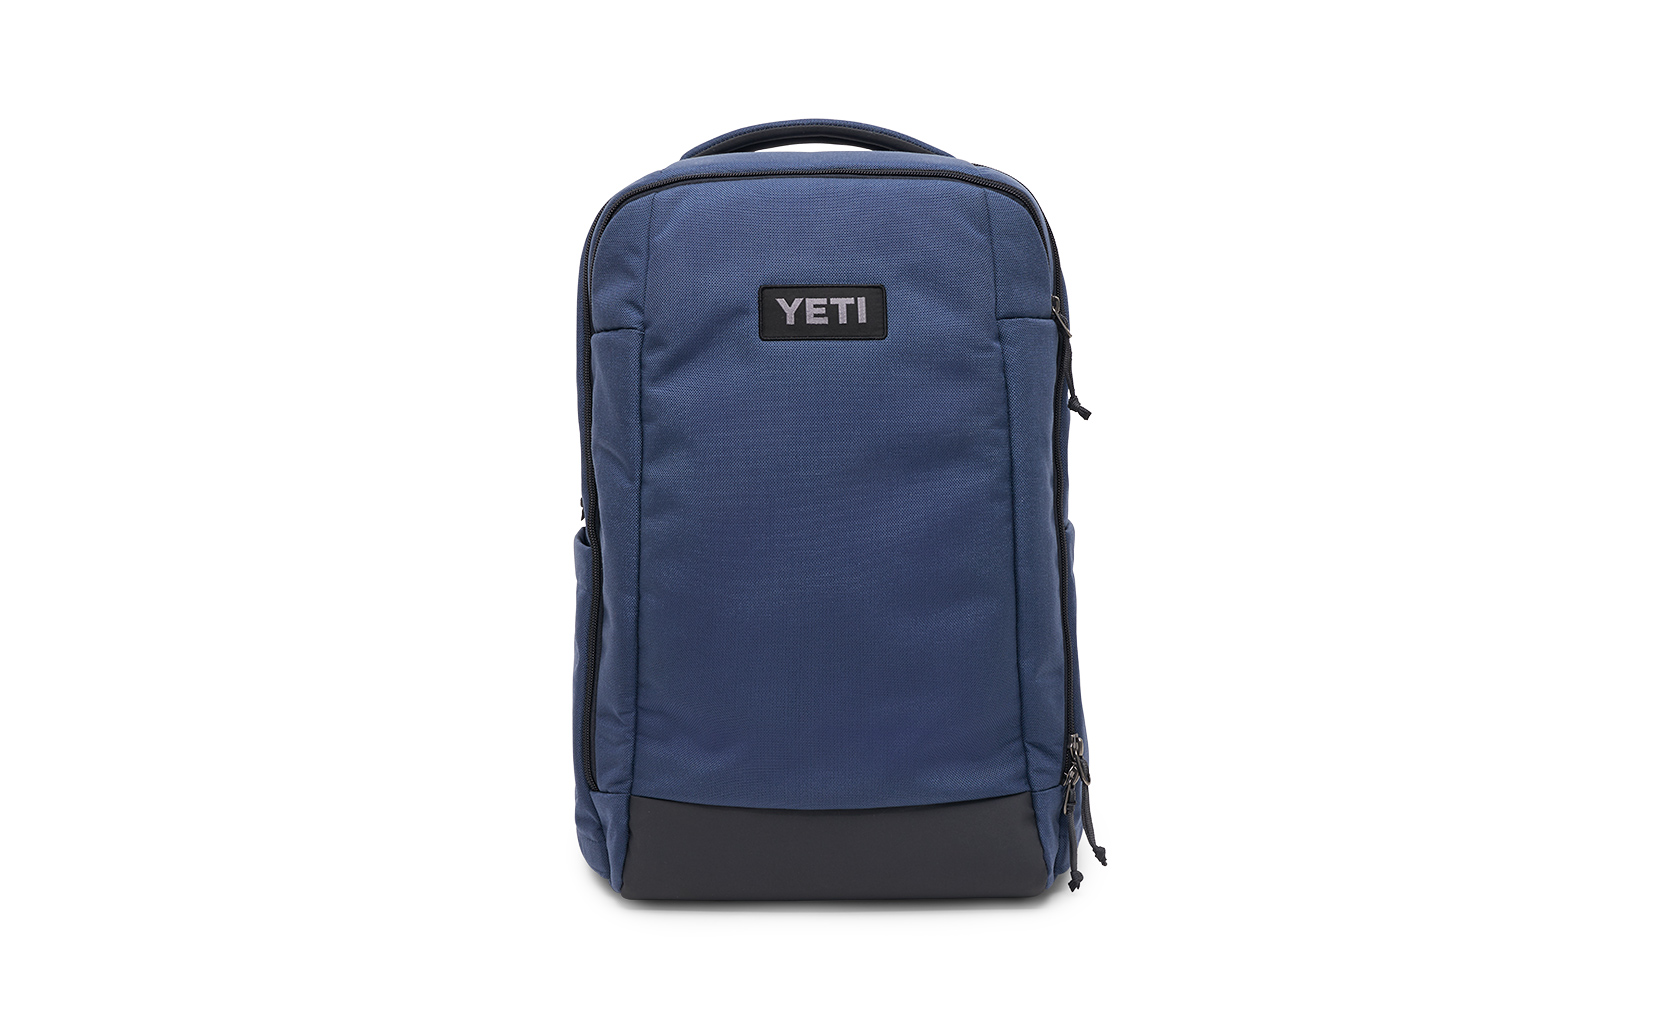 Yeti Crossroads Backpack 23 - Slate Blue